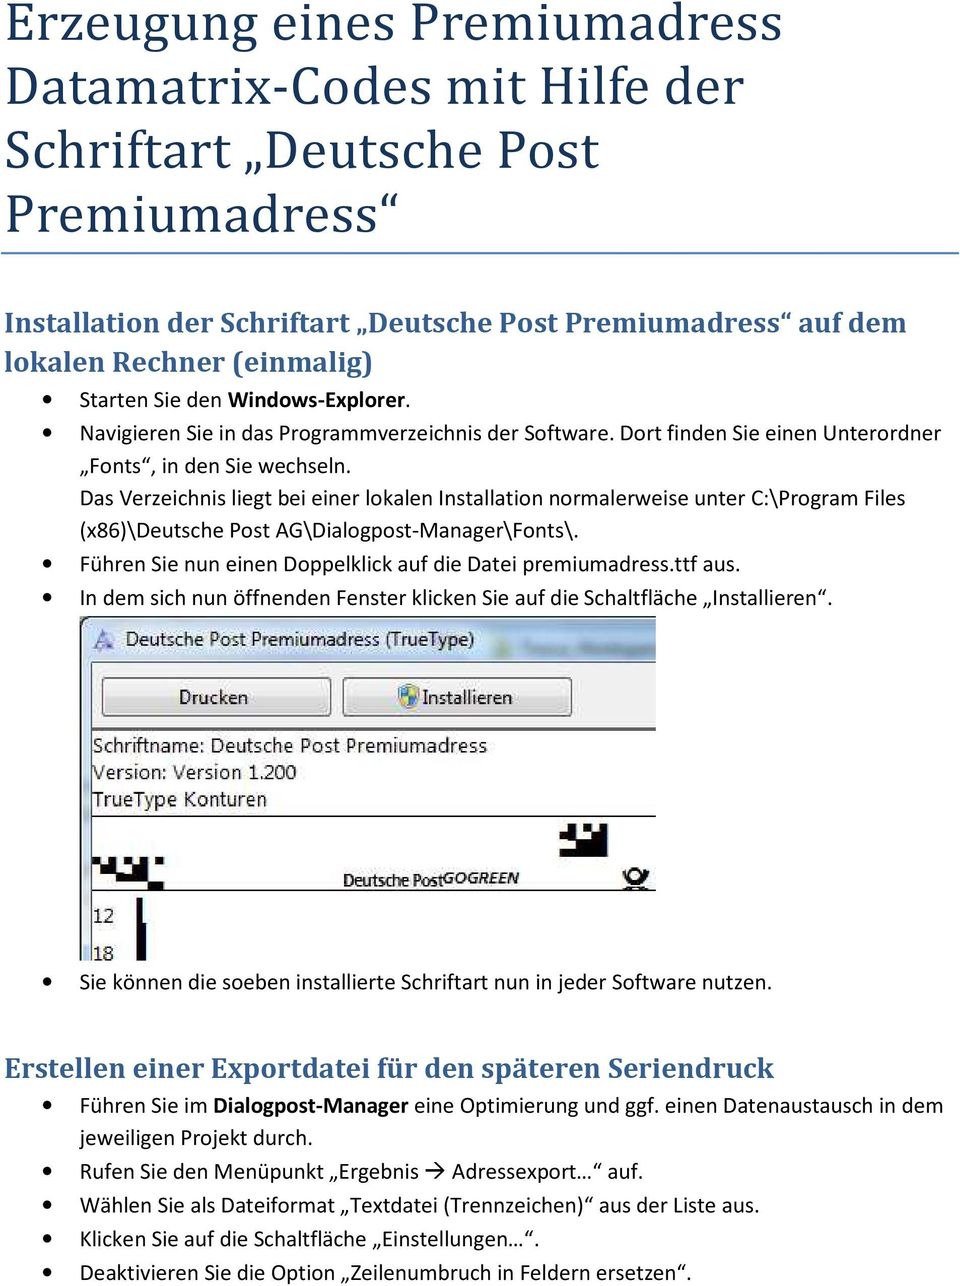 Das Verzeichnis liegt bei einer lokalen Installation normalerweise unter C:\Program Files (x86)\deutsche Post AG\Dialogpost-Manager\Fonts\.